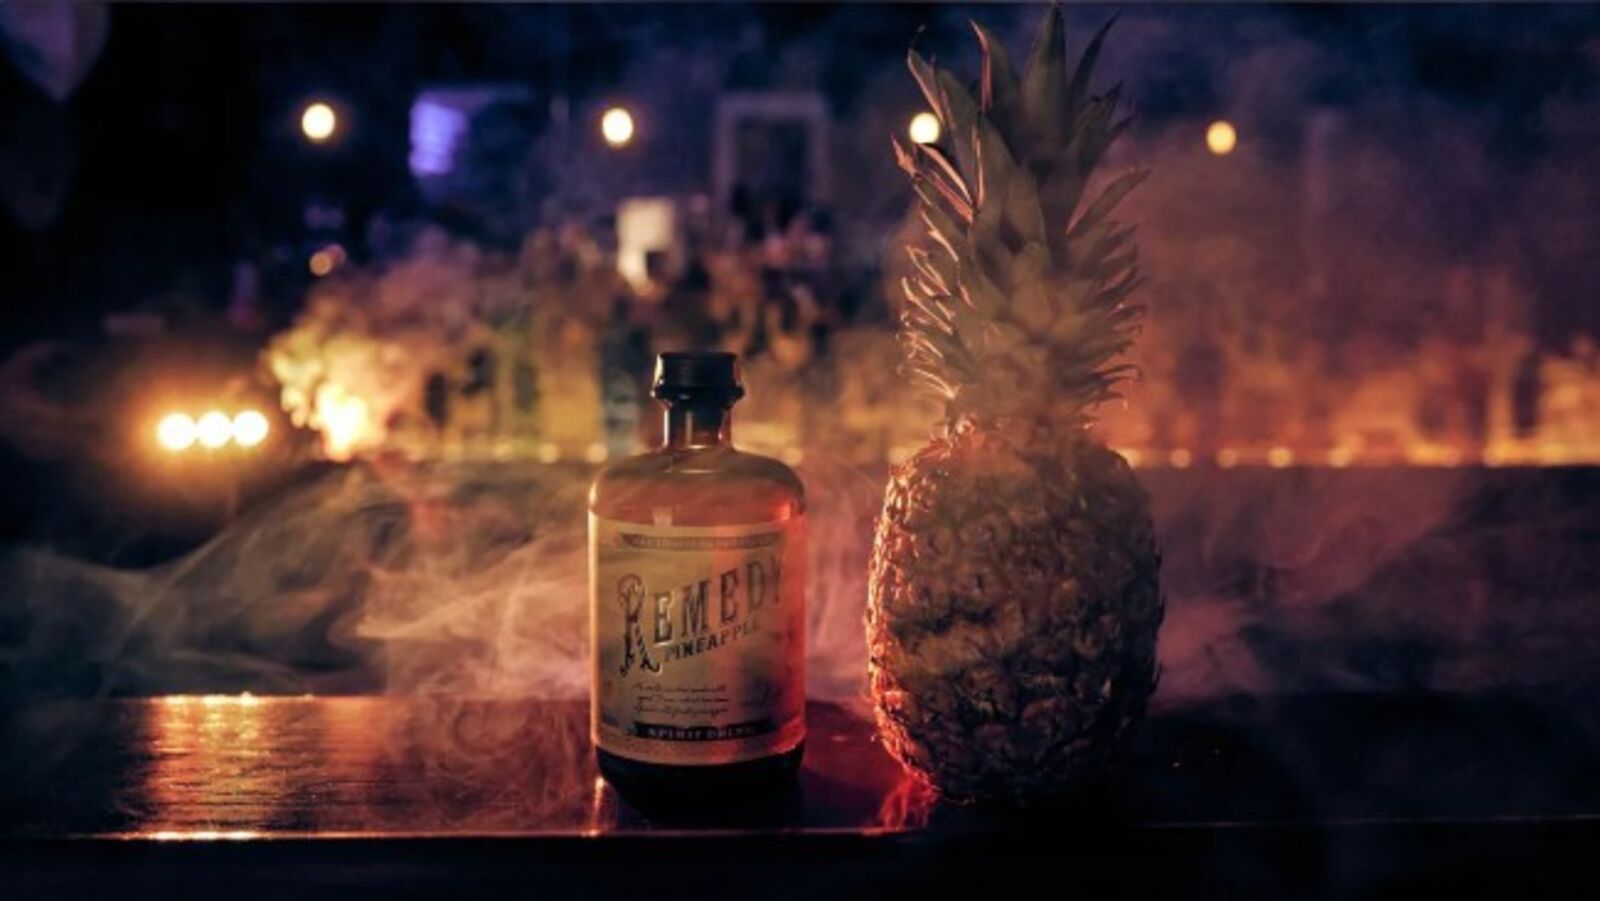   Neues aus Farrington's Apotheke: der Remedy Pineapple